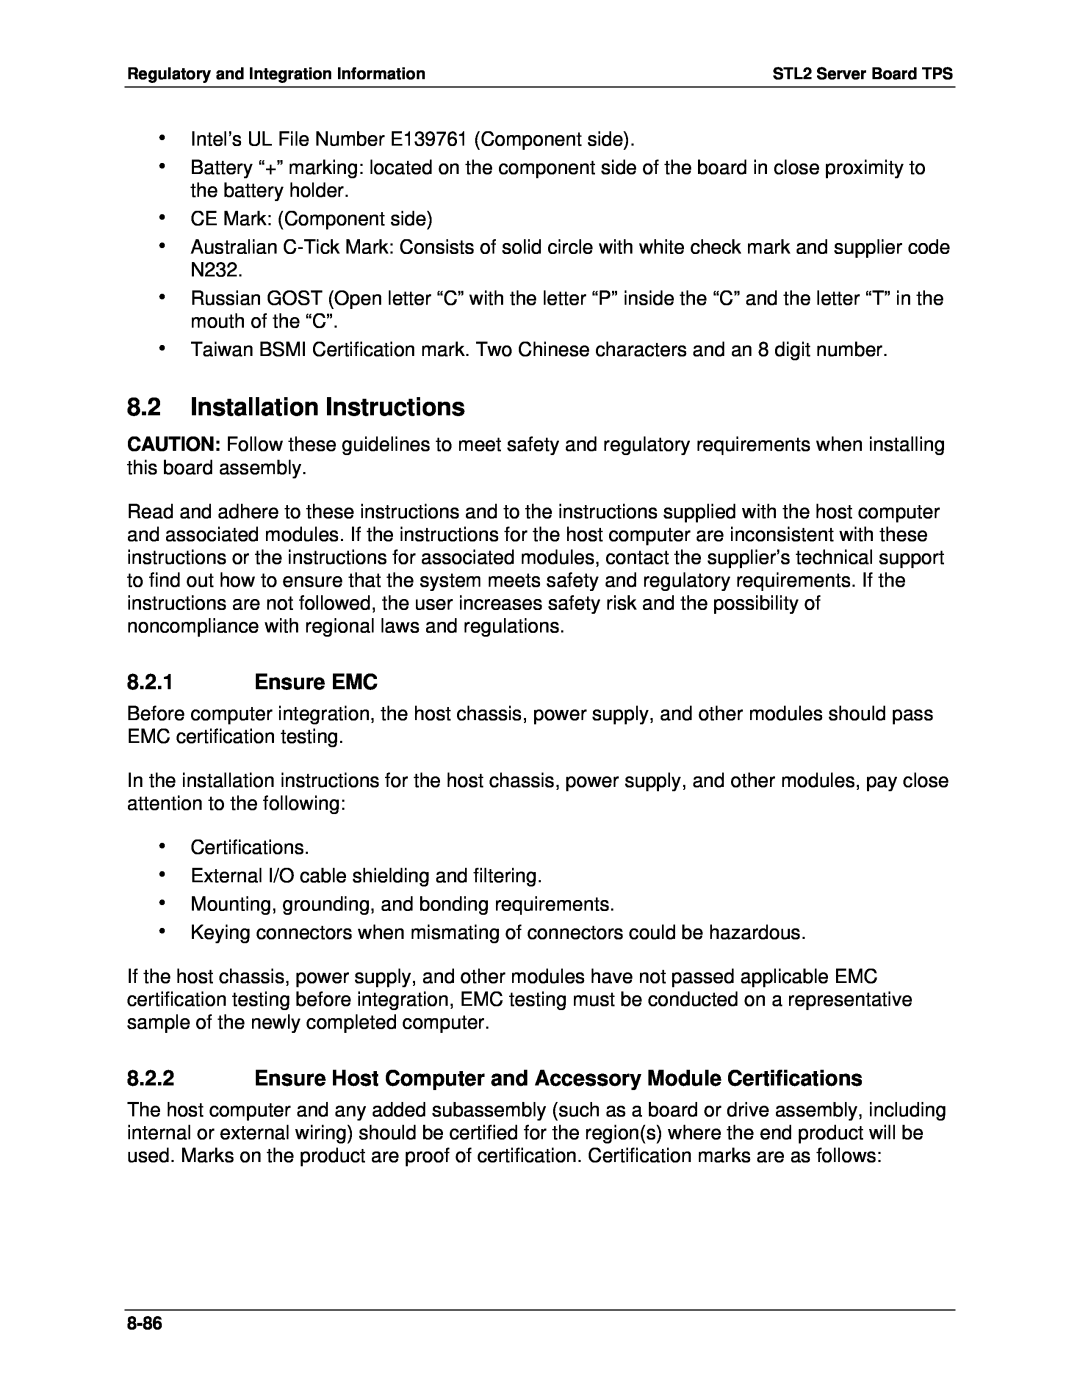 Intel STL2 manual 8.2Installation Instructions, 8.2.1Ensure EMC 